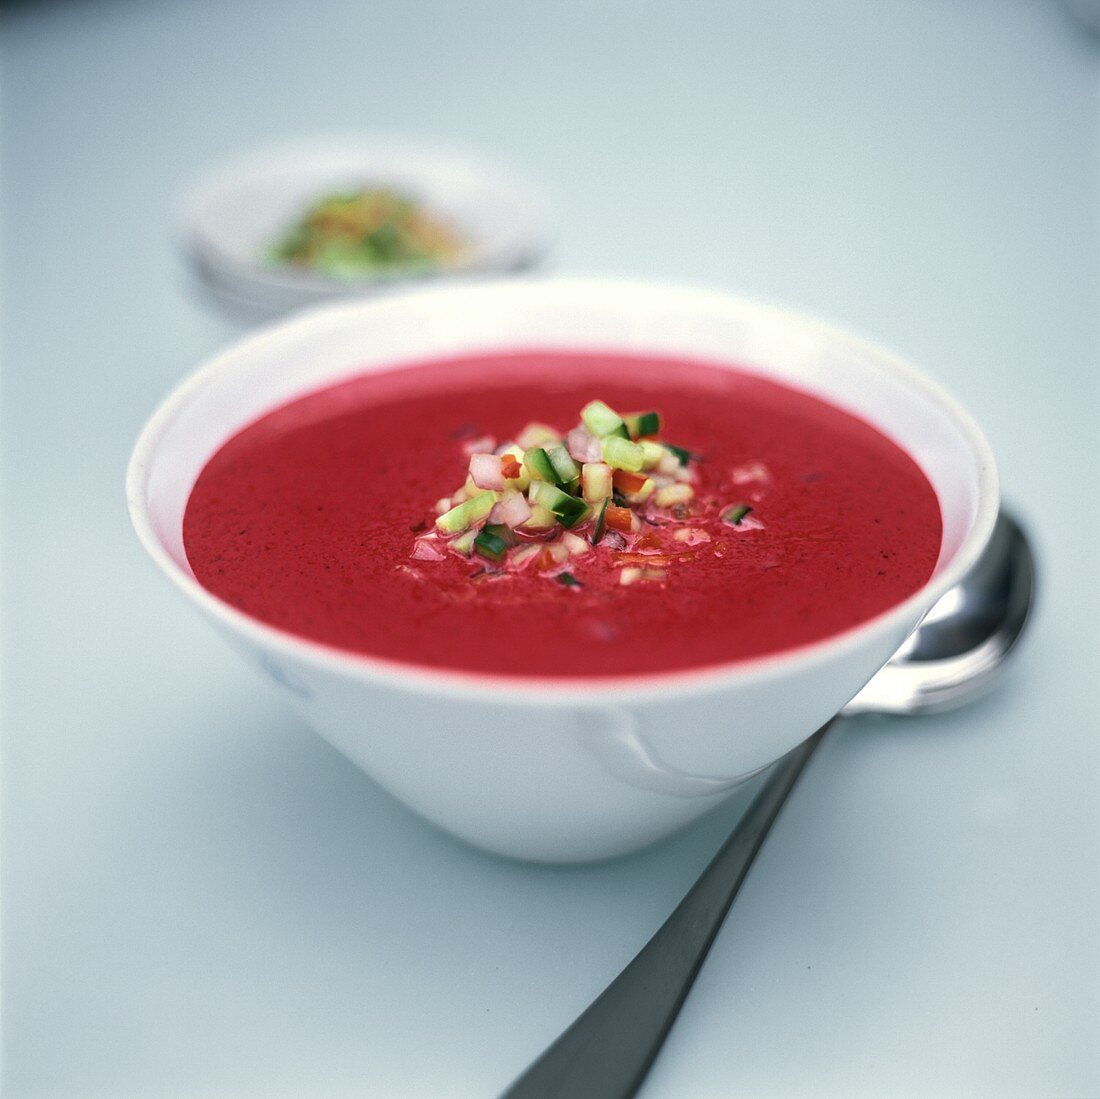 Cremige Rote-Bete-Suppe, garniert mit fein gehacktem Gemüse